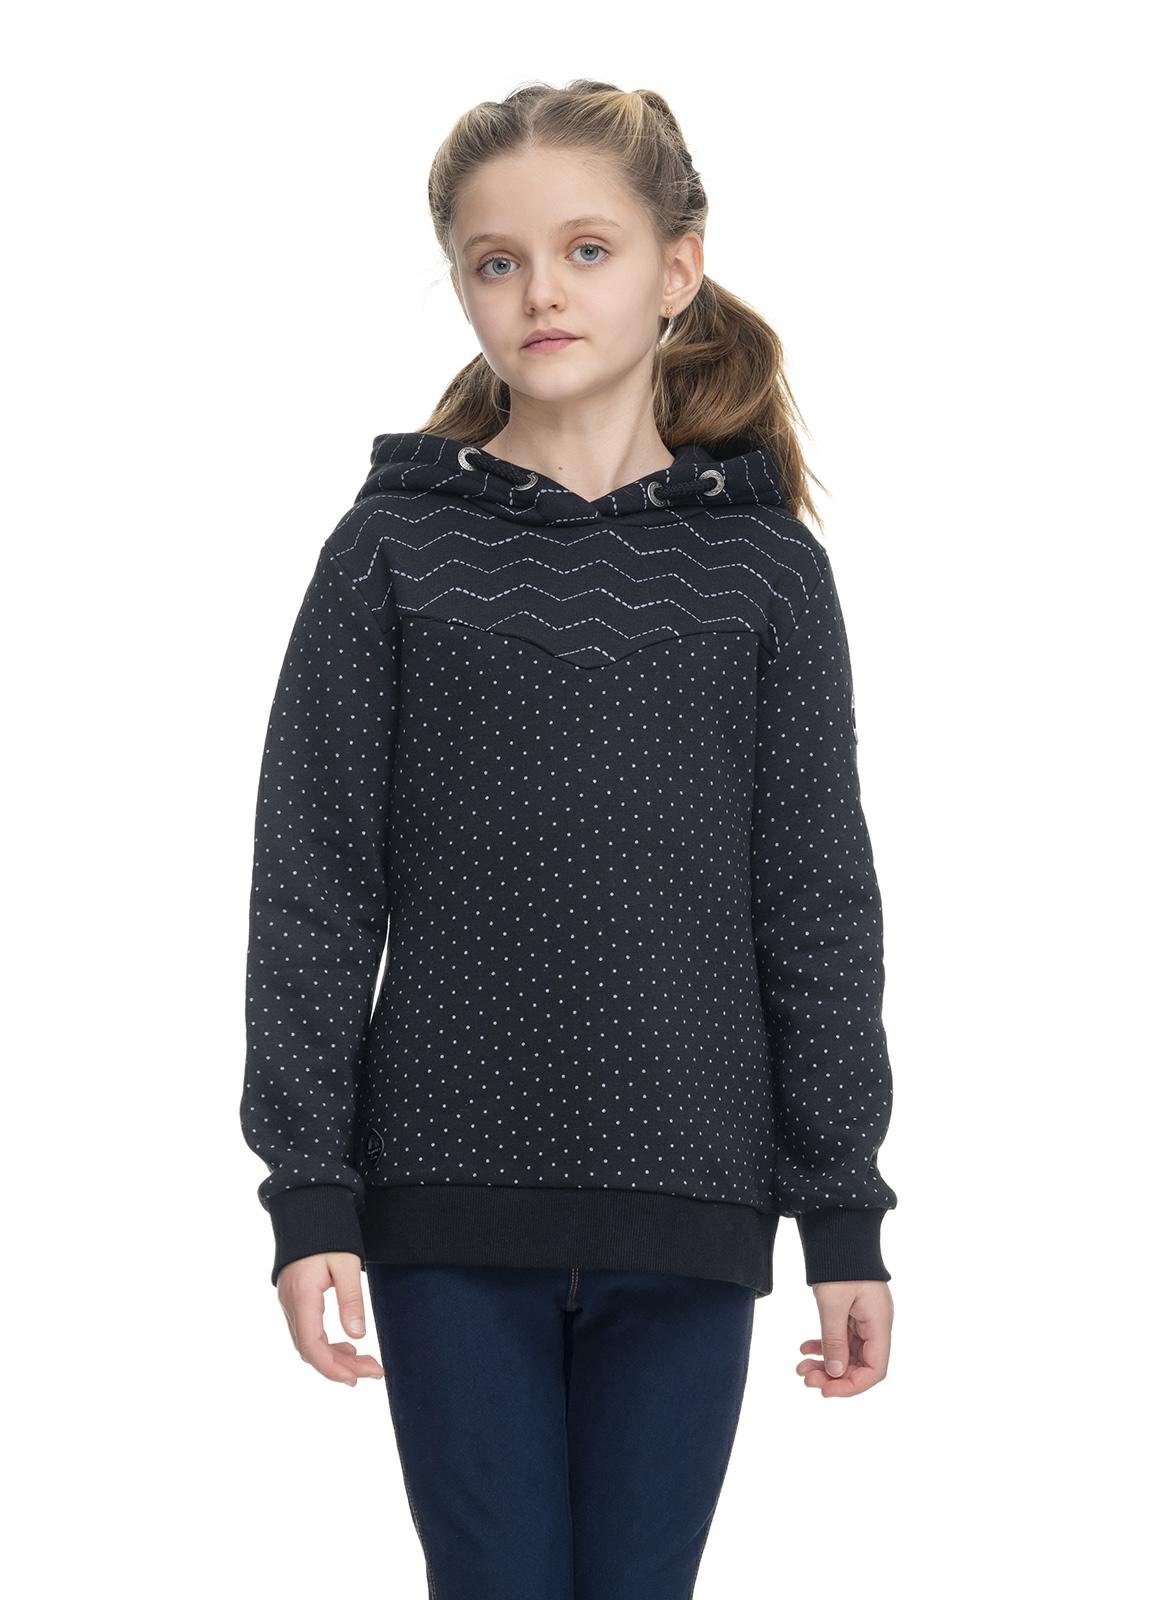 Kristla schwarz Sweat Mädchen großer Kapuzensweater Hoodie mit Kapuze Ragwear